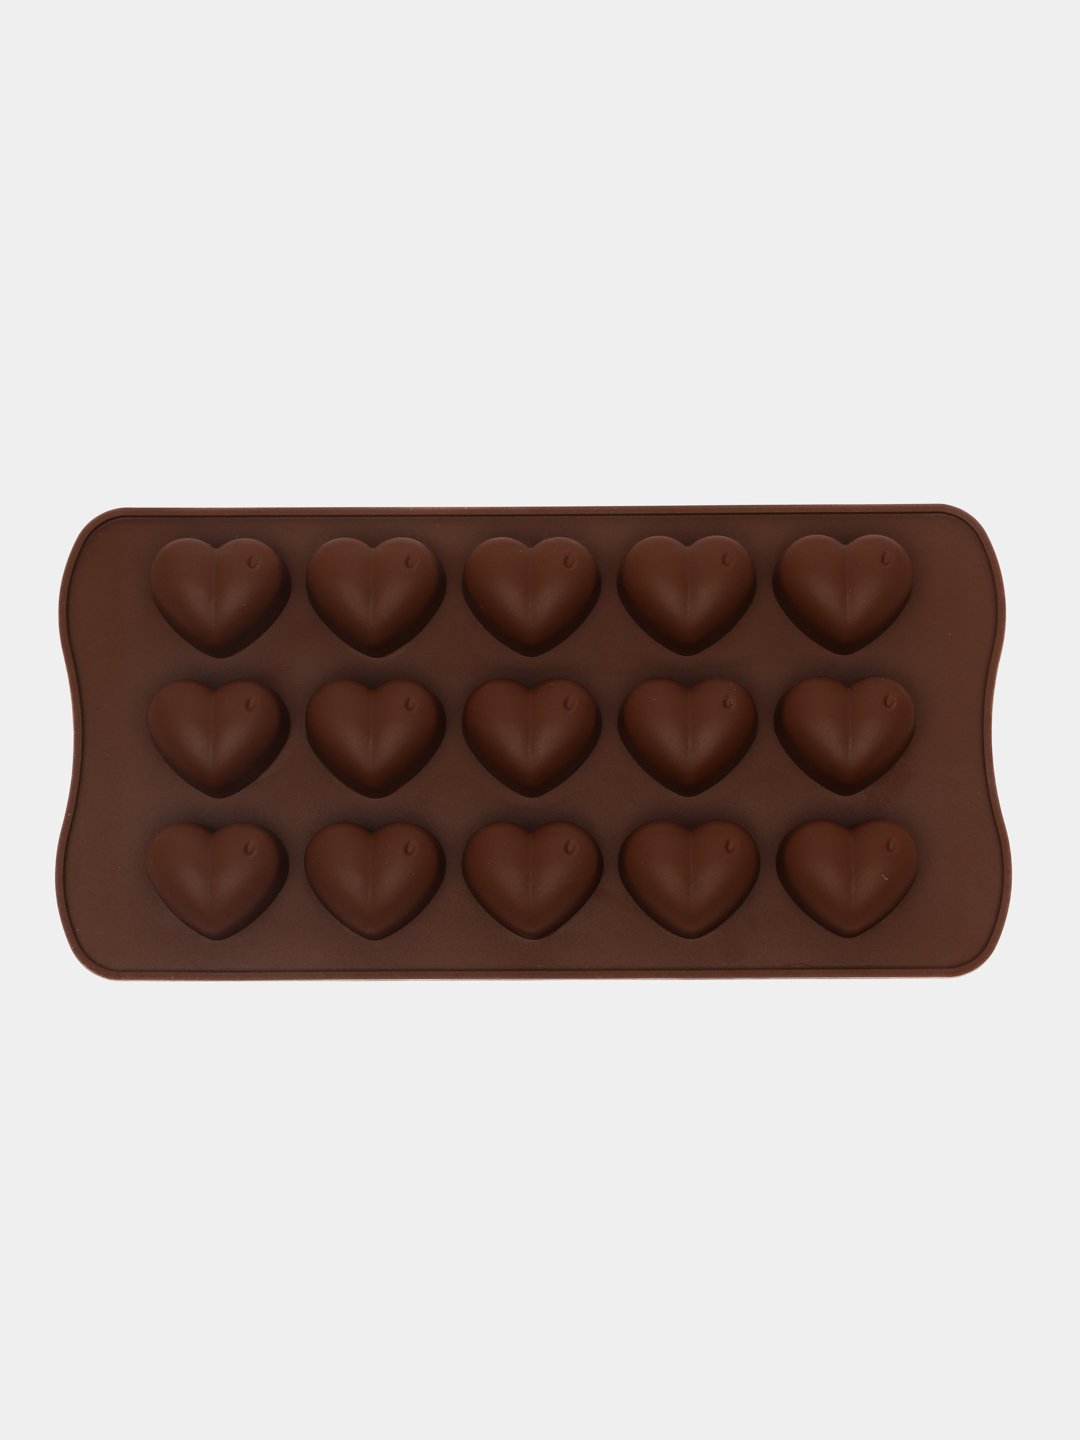 Самое большое сердце, приготовленное из шоколада